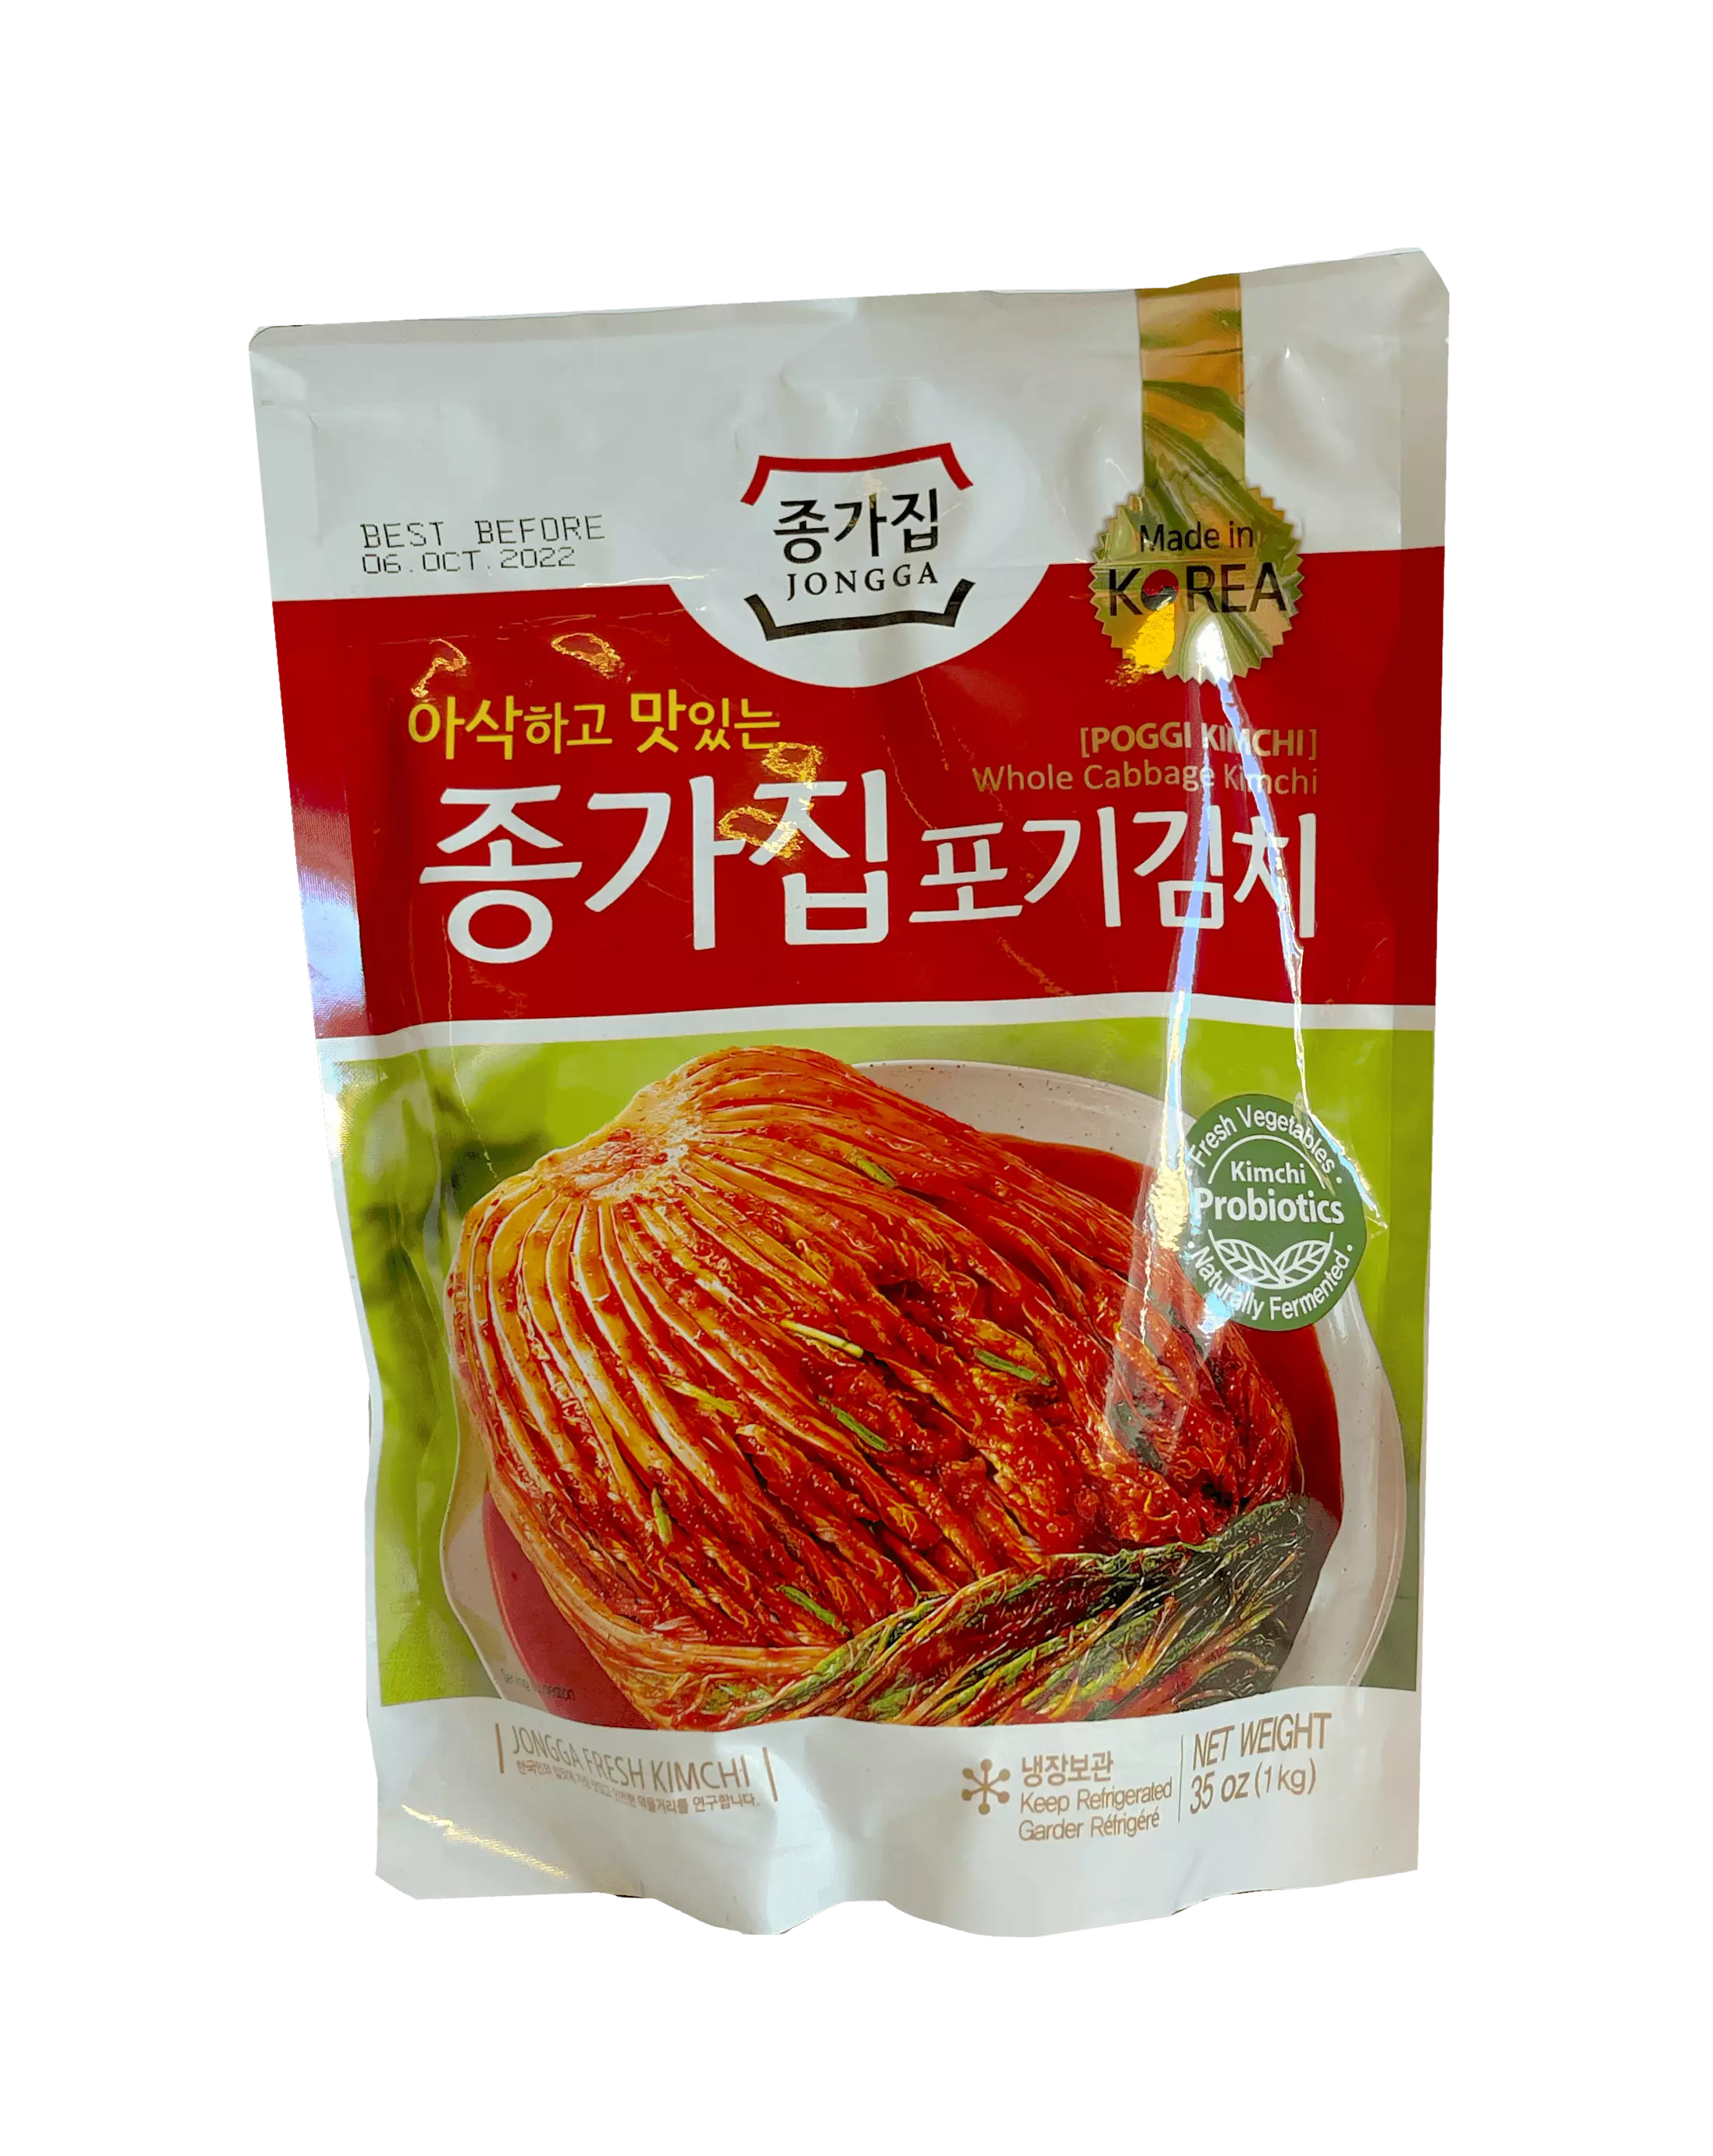 泡菜 1000g Chongga 韩国